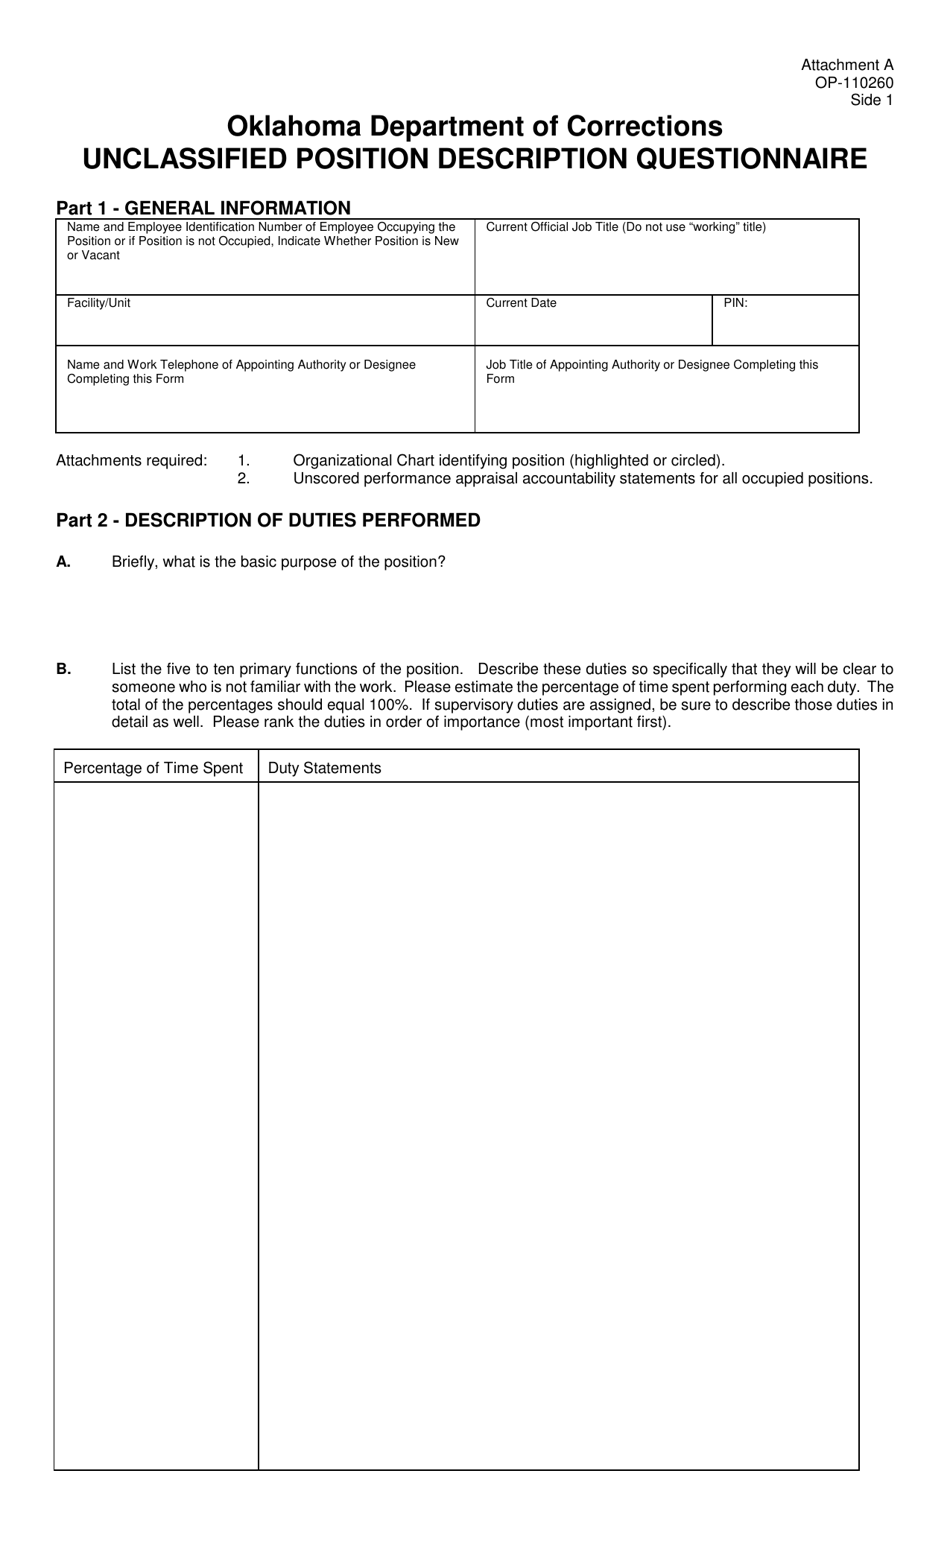 DOC Form OP-110260 Attachment A Unclassified Position Description Questionnaire - Oklahoma, Page 1